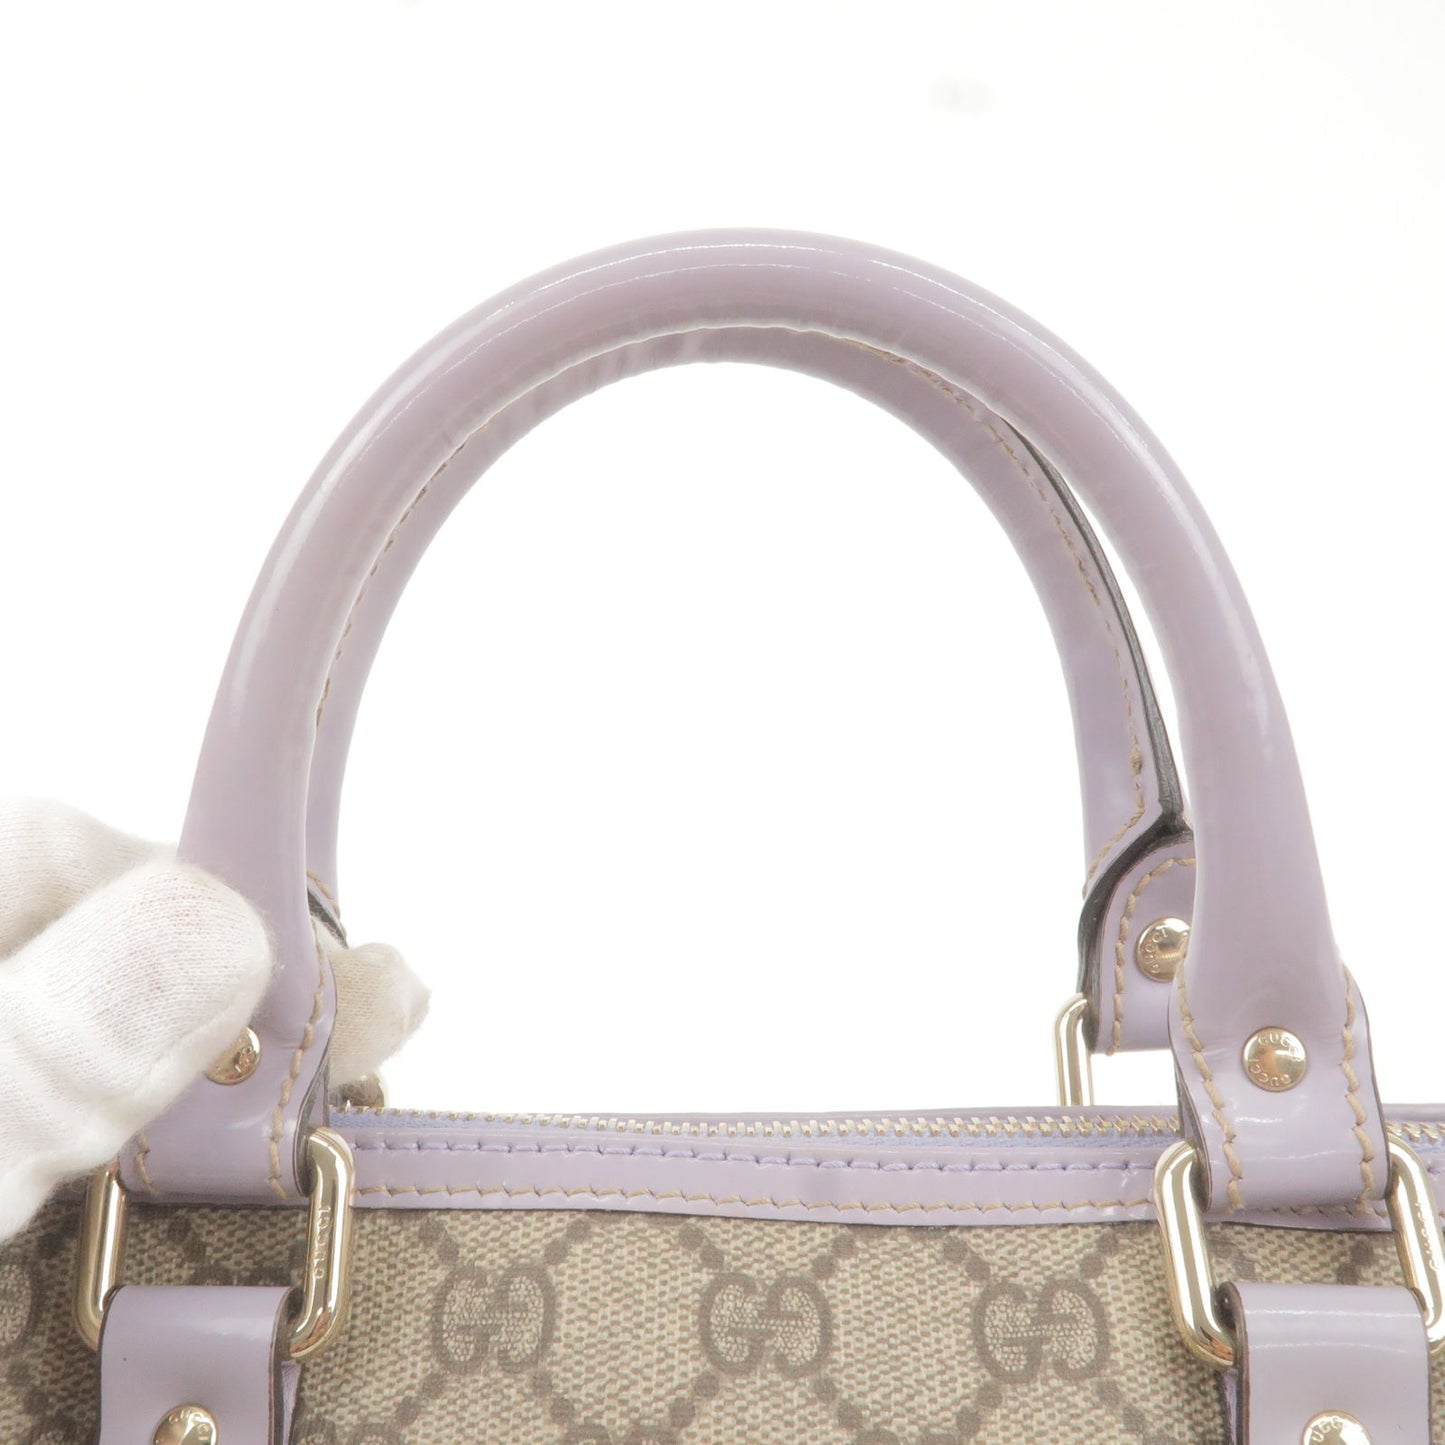 GUCCI GG Plus GG Supreme Leather Boston Bag Beige Lavender 193604